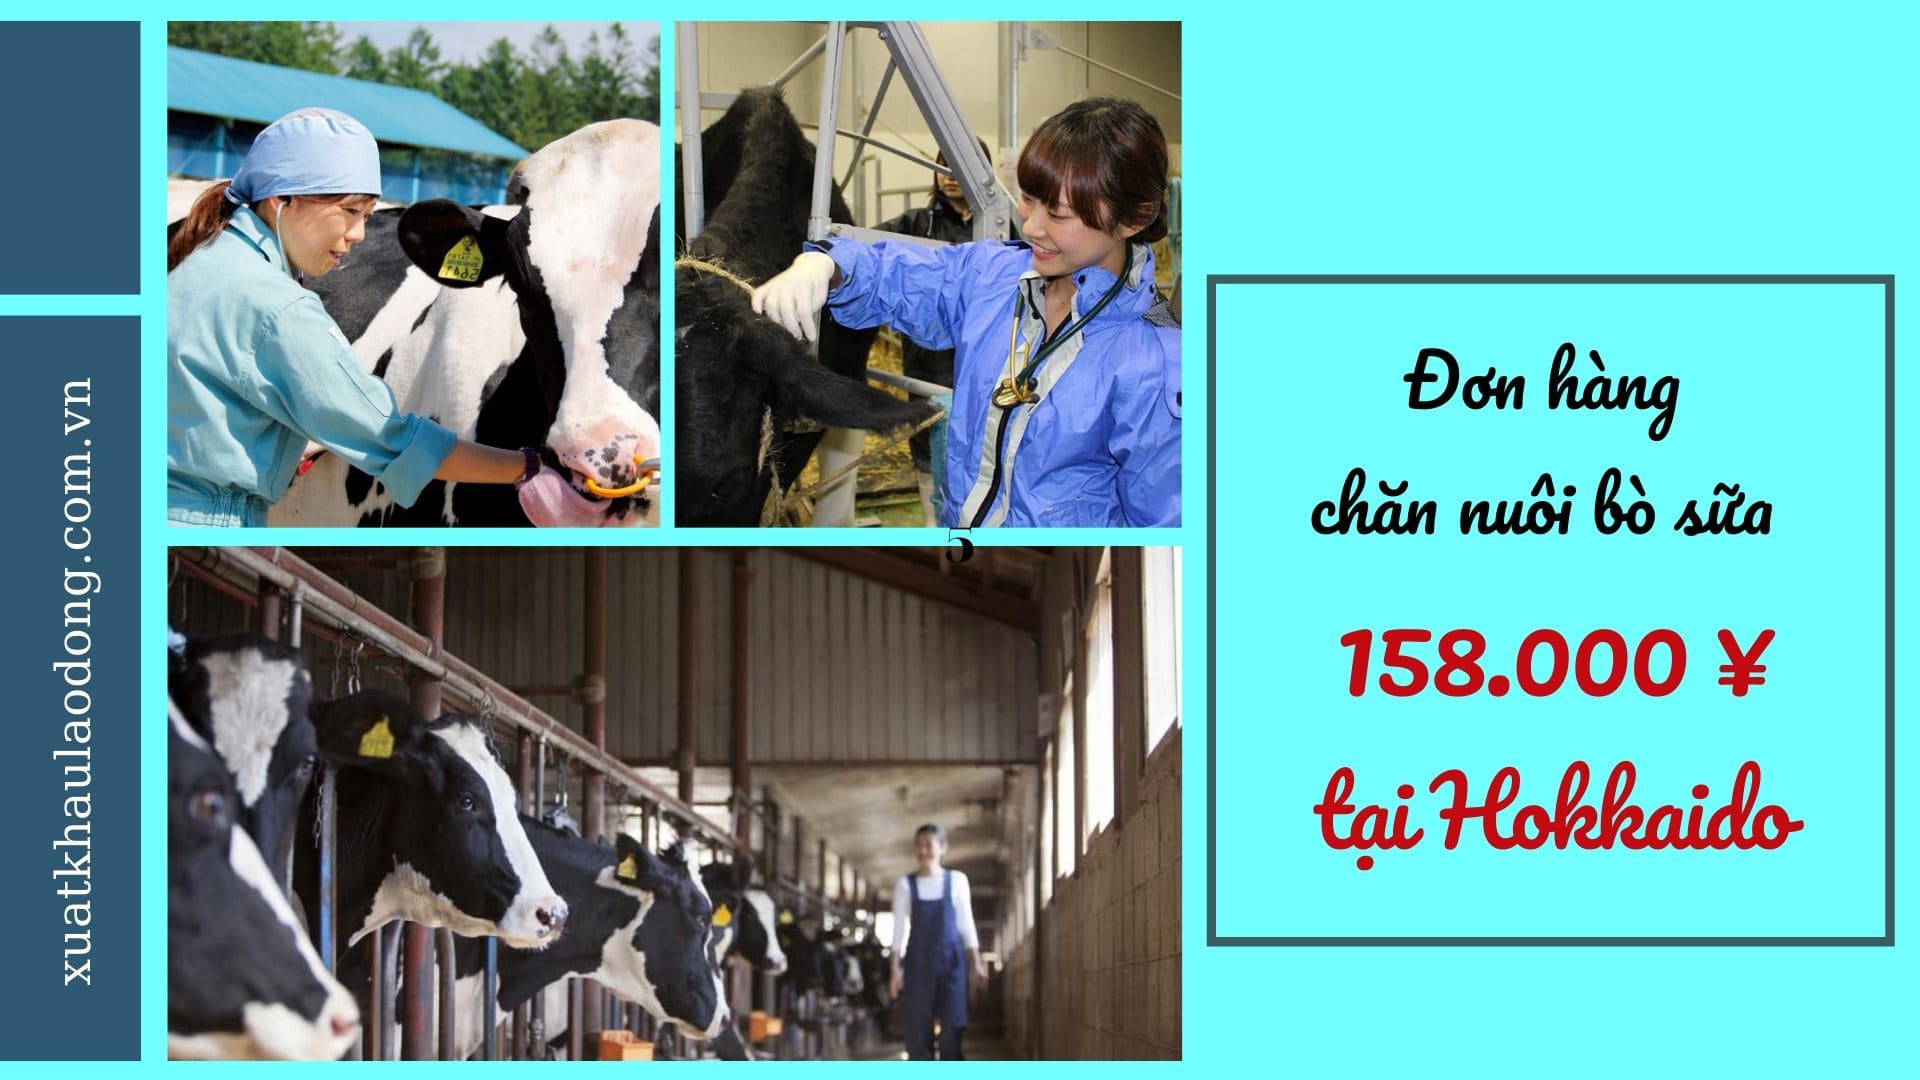 Đơn hàng chăn nuôi bò sữa tại Hokkaido sữa LƯƠNG SIÊU CAO, tuyển gấp 11/2023